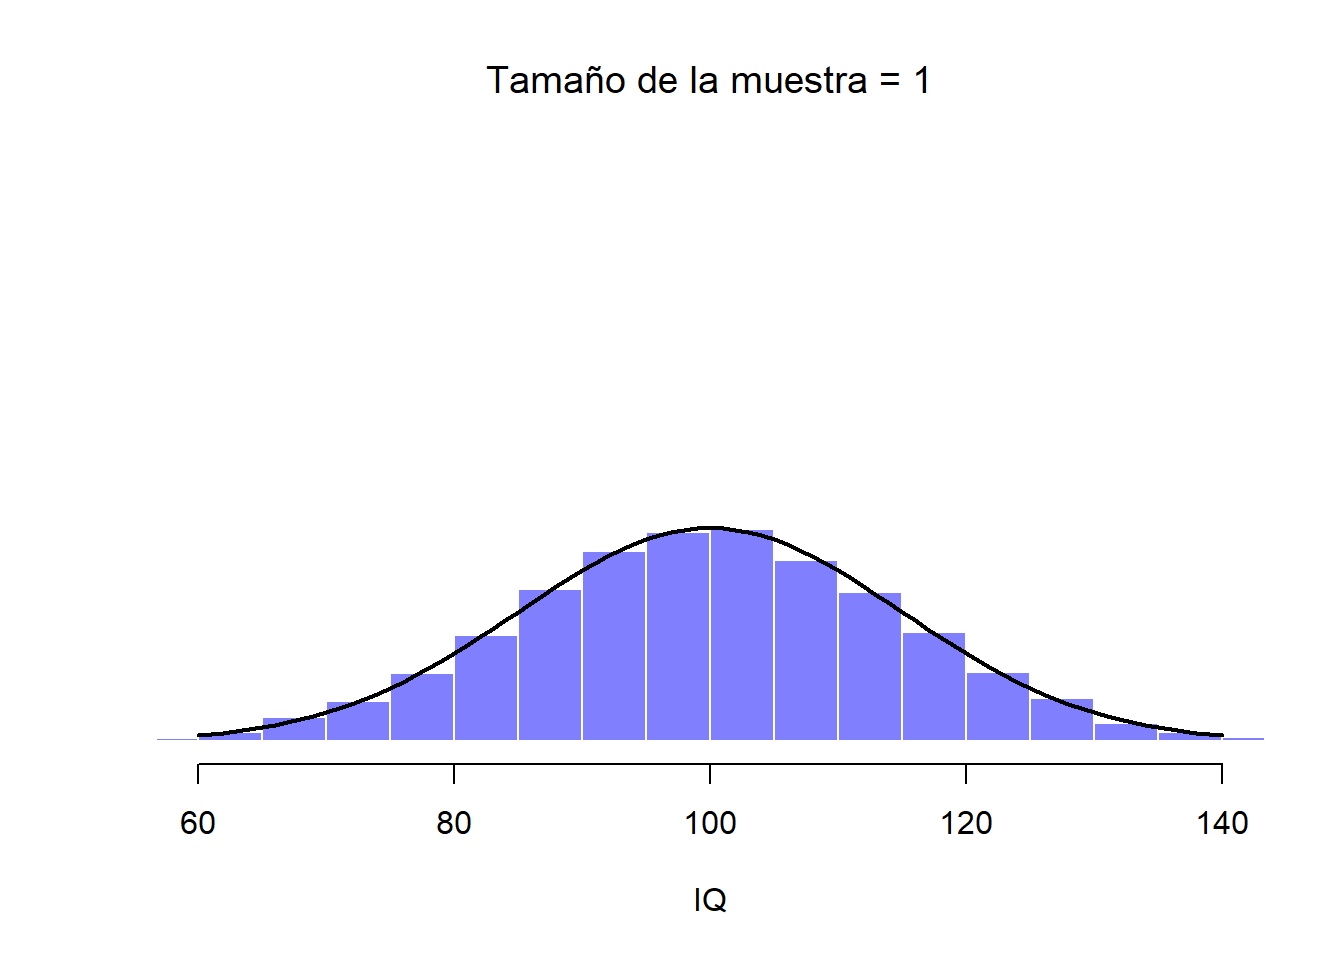 Esta distribución muestral parte de una sola observación (tamaño muestral de 1), de forma que la media muestral es el puntaje de CI de una persona. Como consecuencia, la distribución muestral de la media es idéntica a la distribución poblacional de los valores de CI.